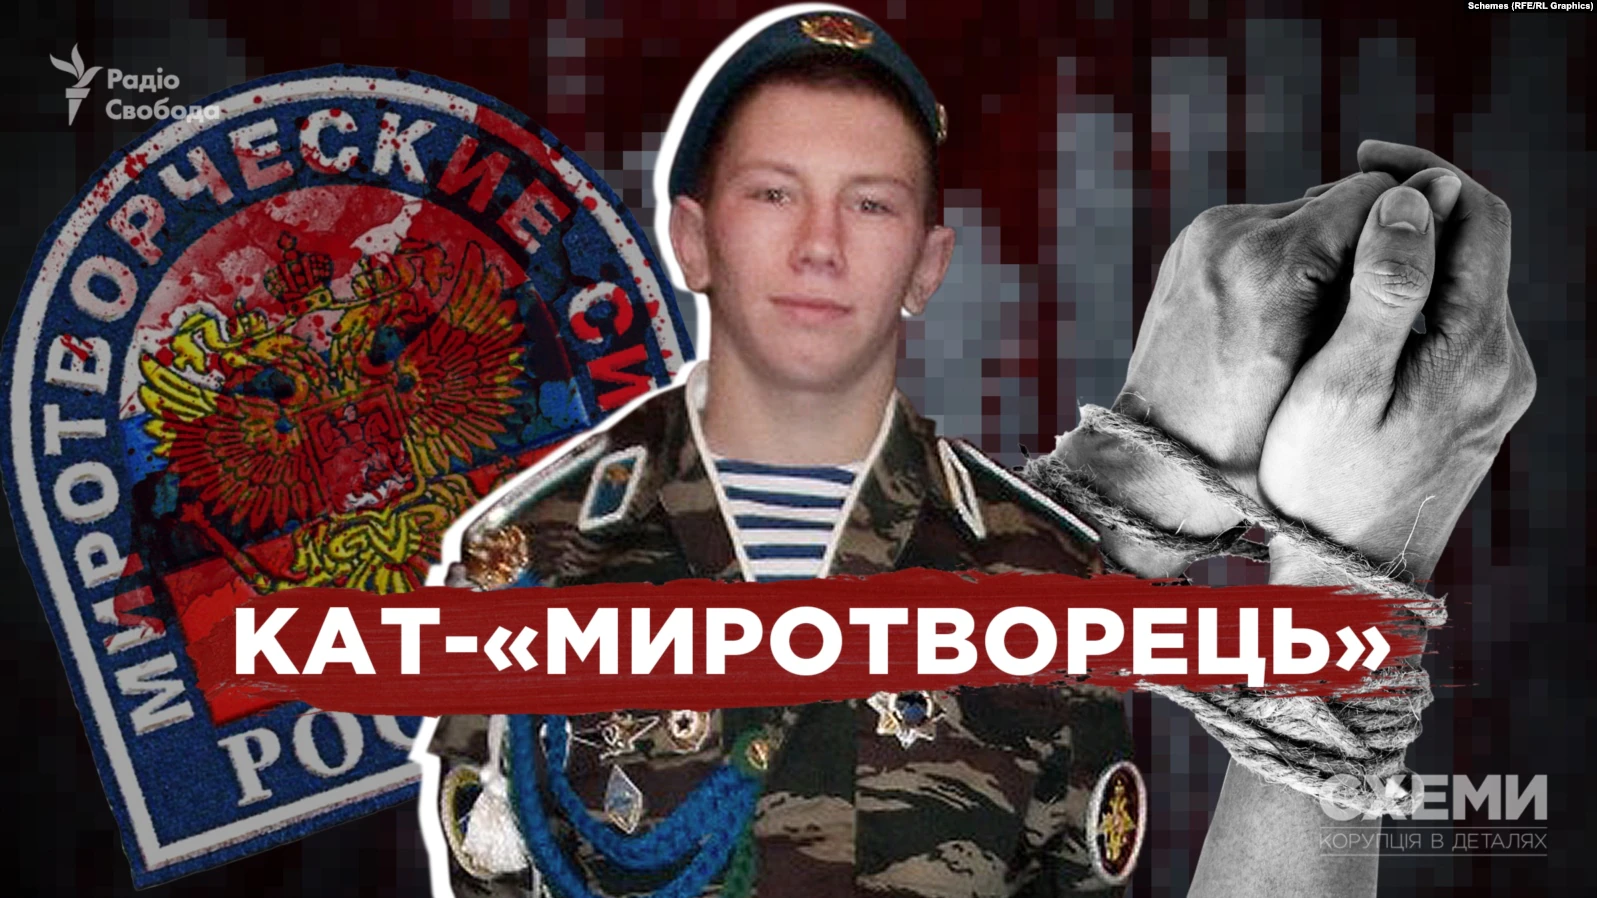 «Кат-миротворець»: «Схеми» допомогли ідентифікувати військового з Росії, який знущався над селянами